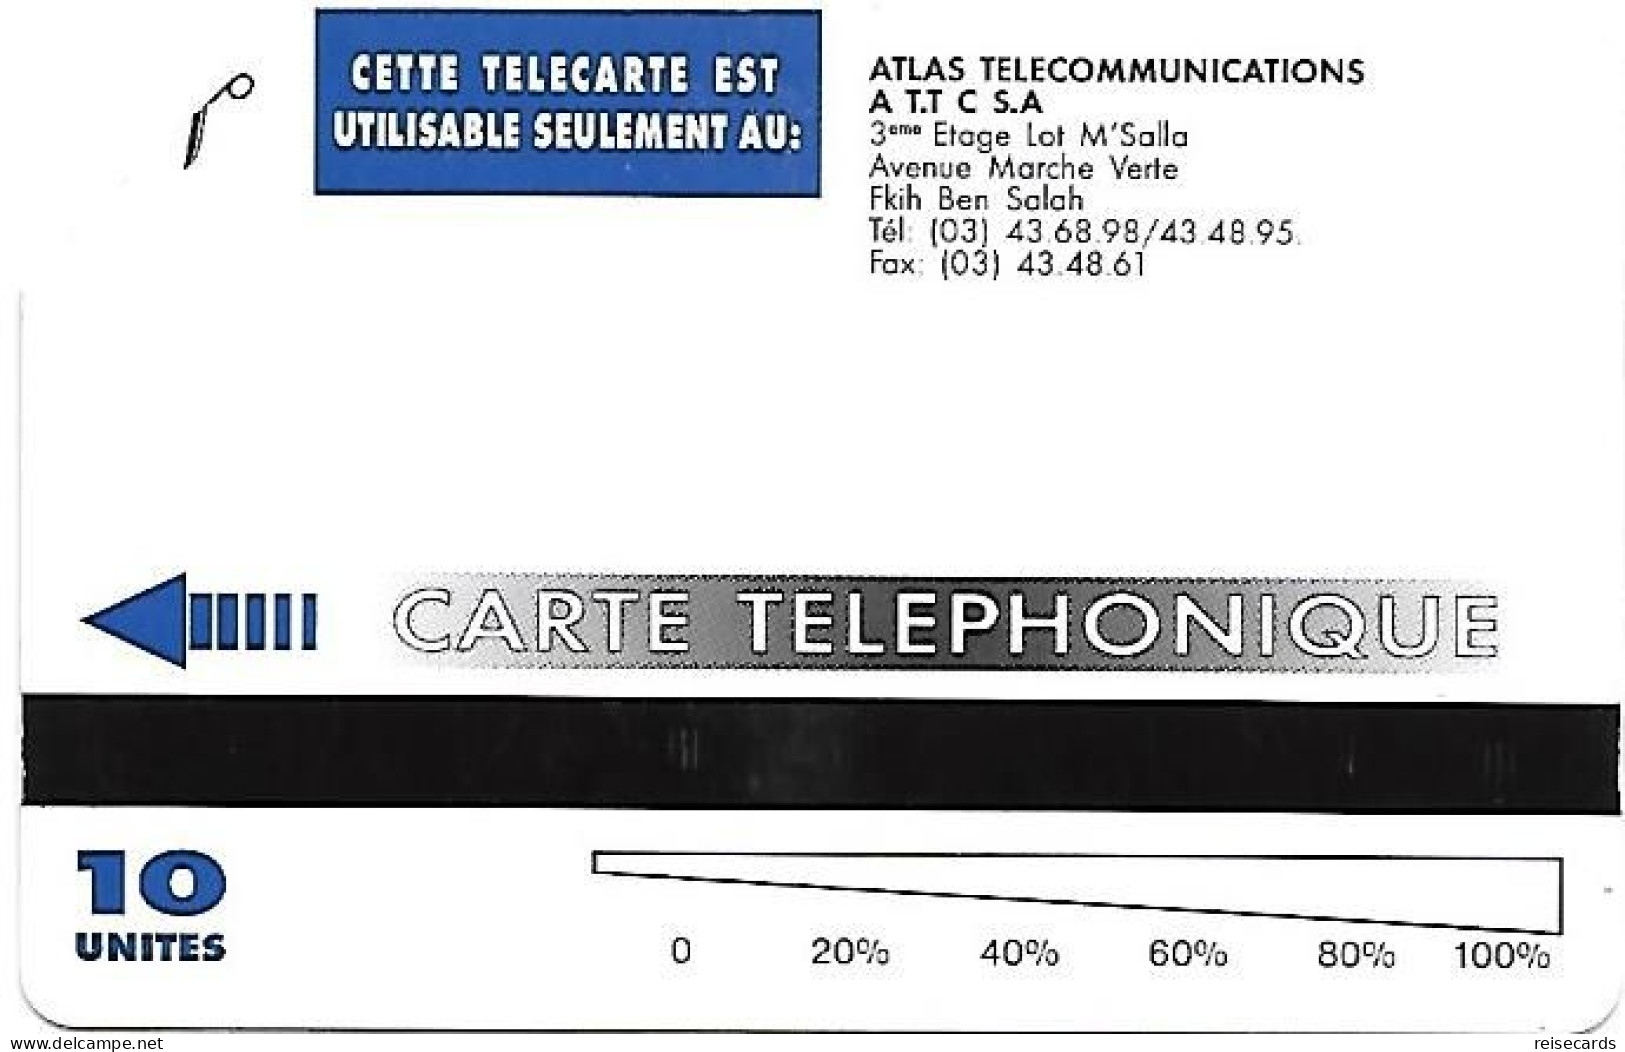 Morocco: Atlas Telecommunications - Beni Mellal - Marruecos